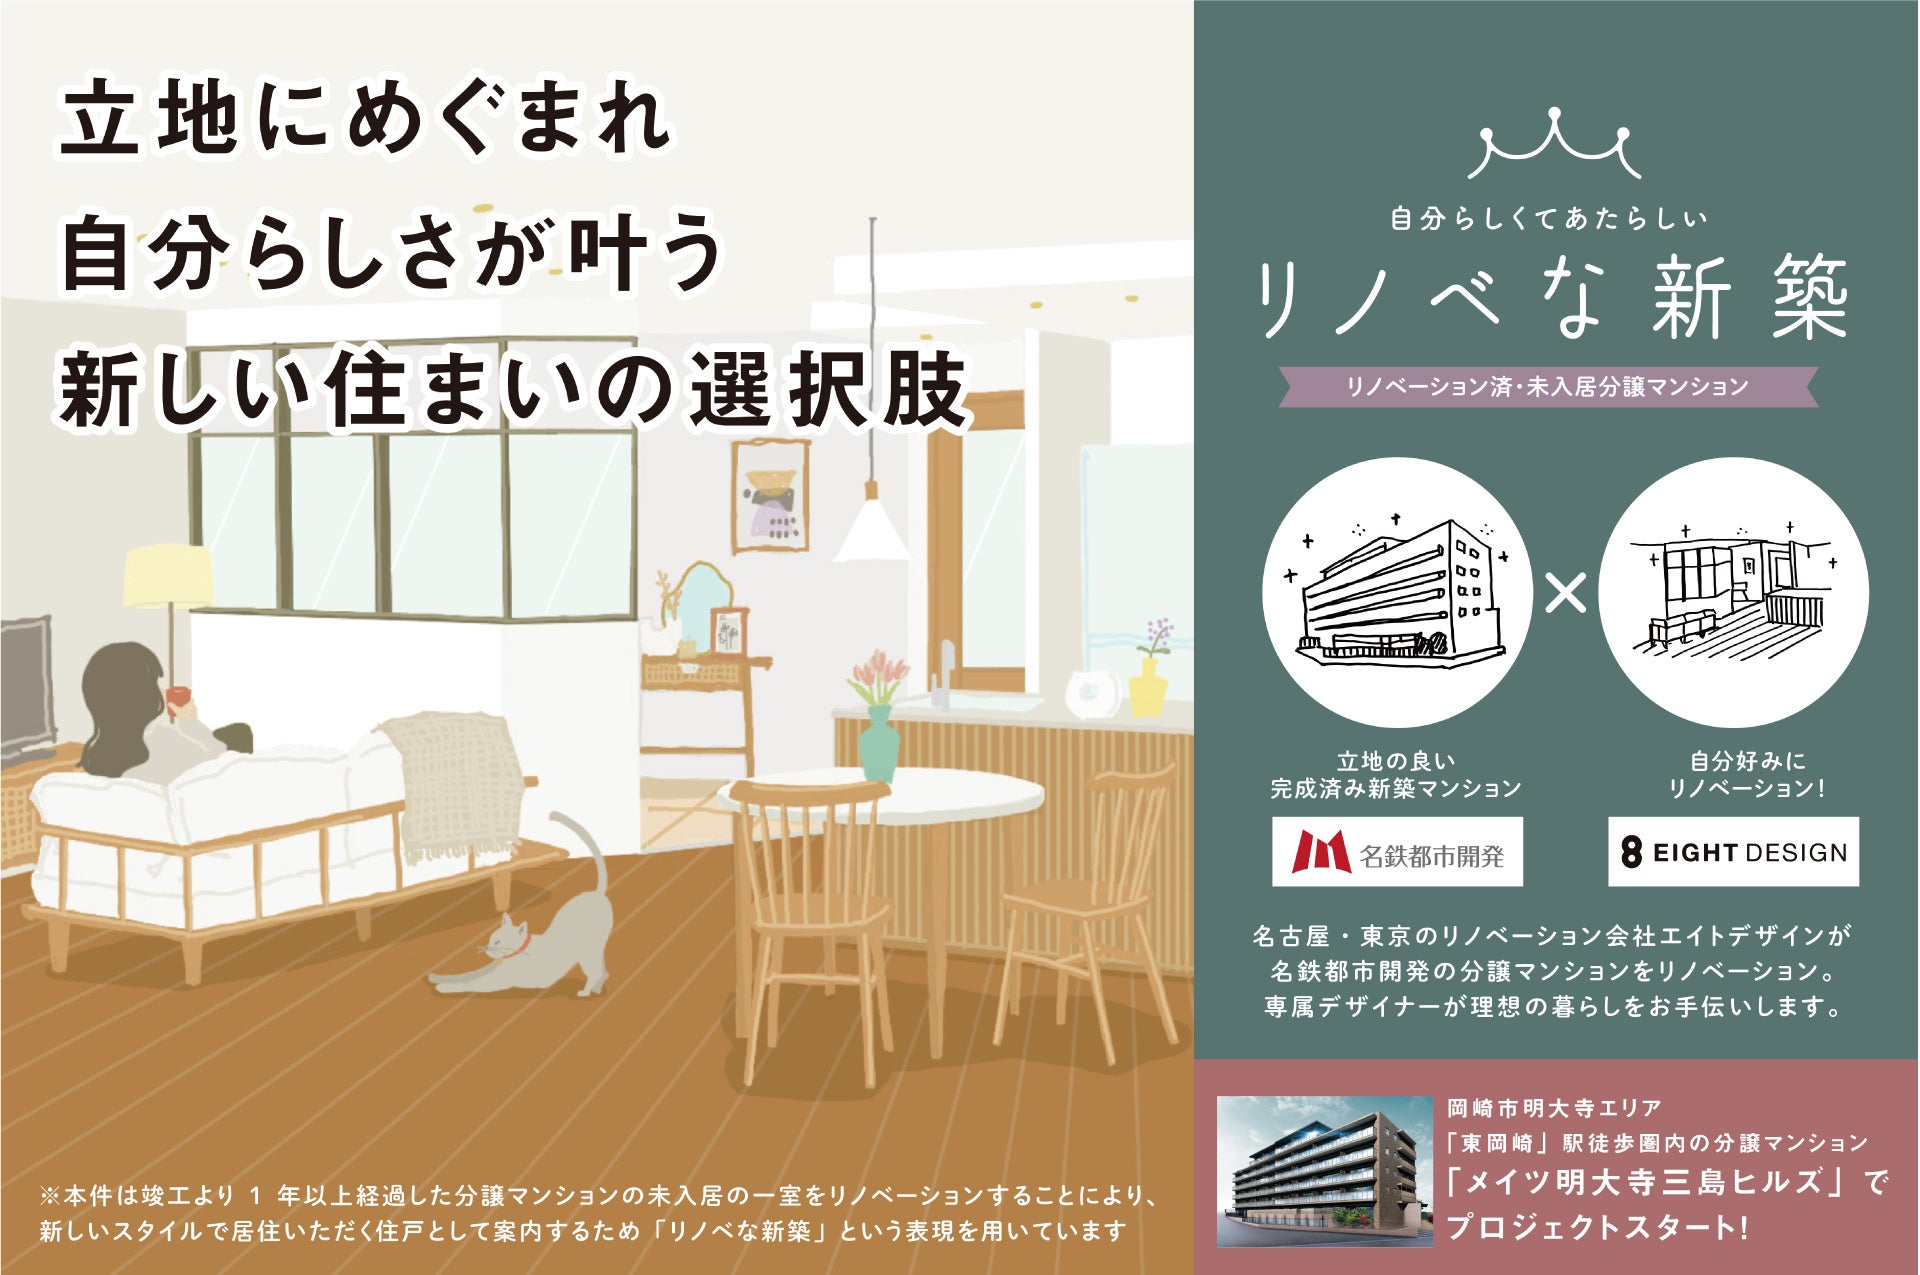 名鉄都市開発 ×EIGHT DESIGN のコラボプロジェクト「リノベな新築*」愛知県岡崎市にて販売開始のサブ画像1